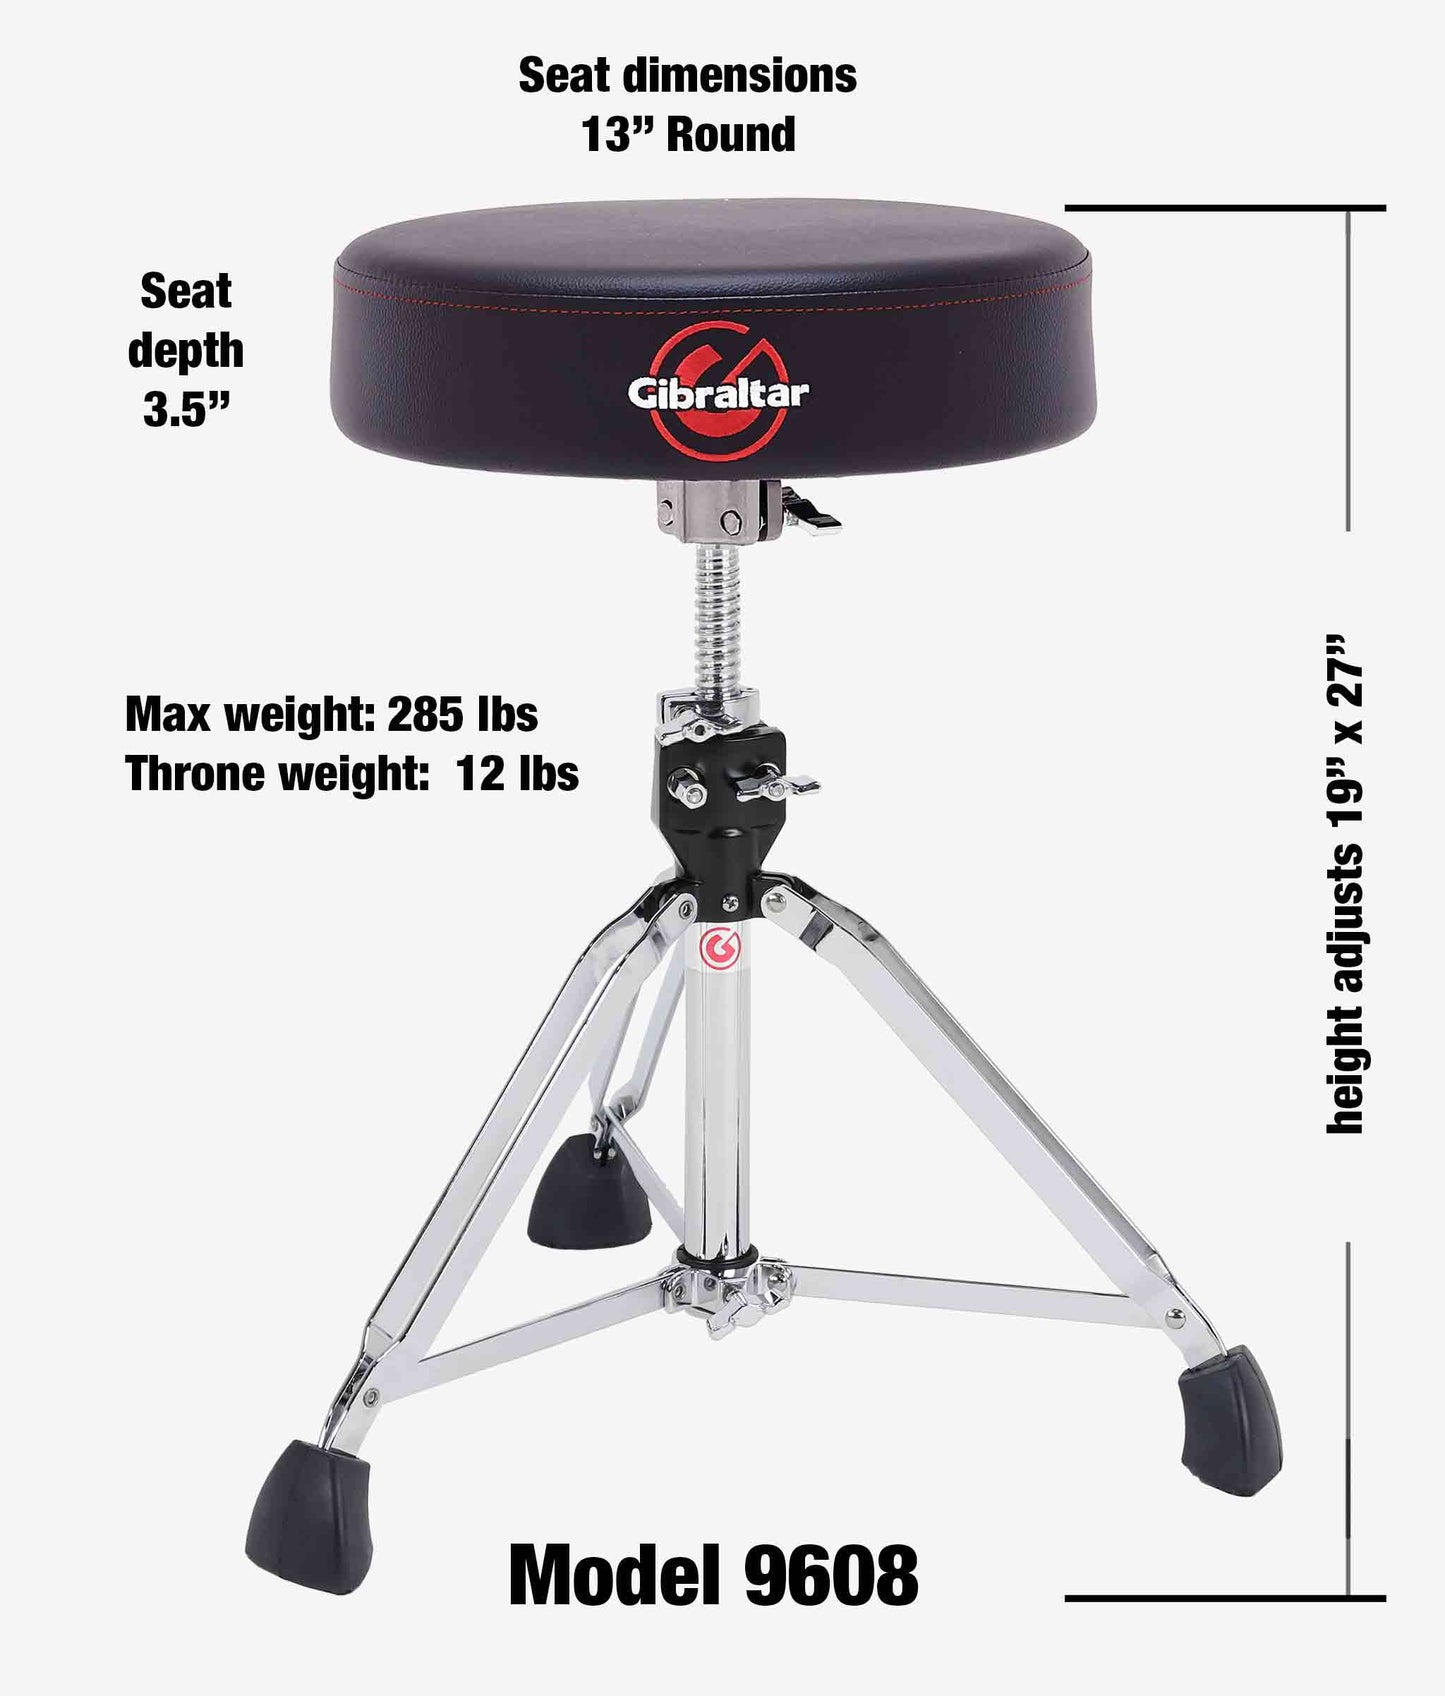  Gibraltar 9608 13" Round Drum Throne Drum Hardware